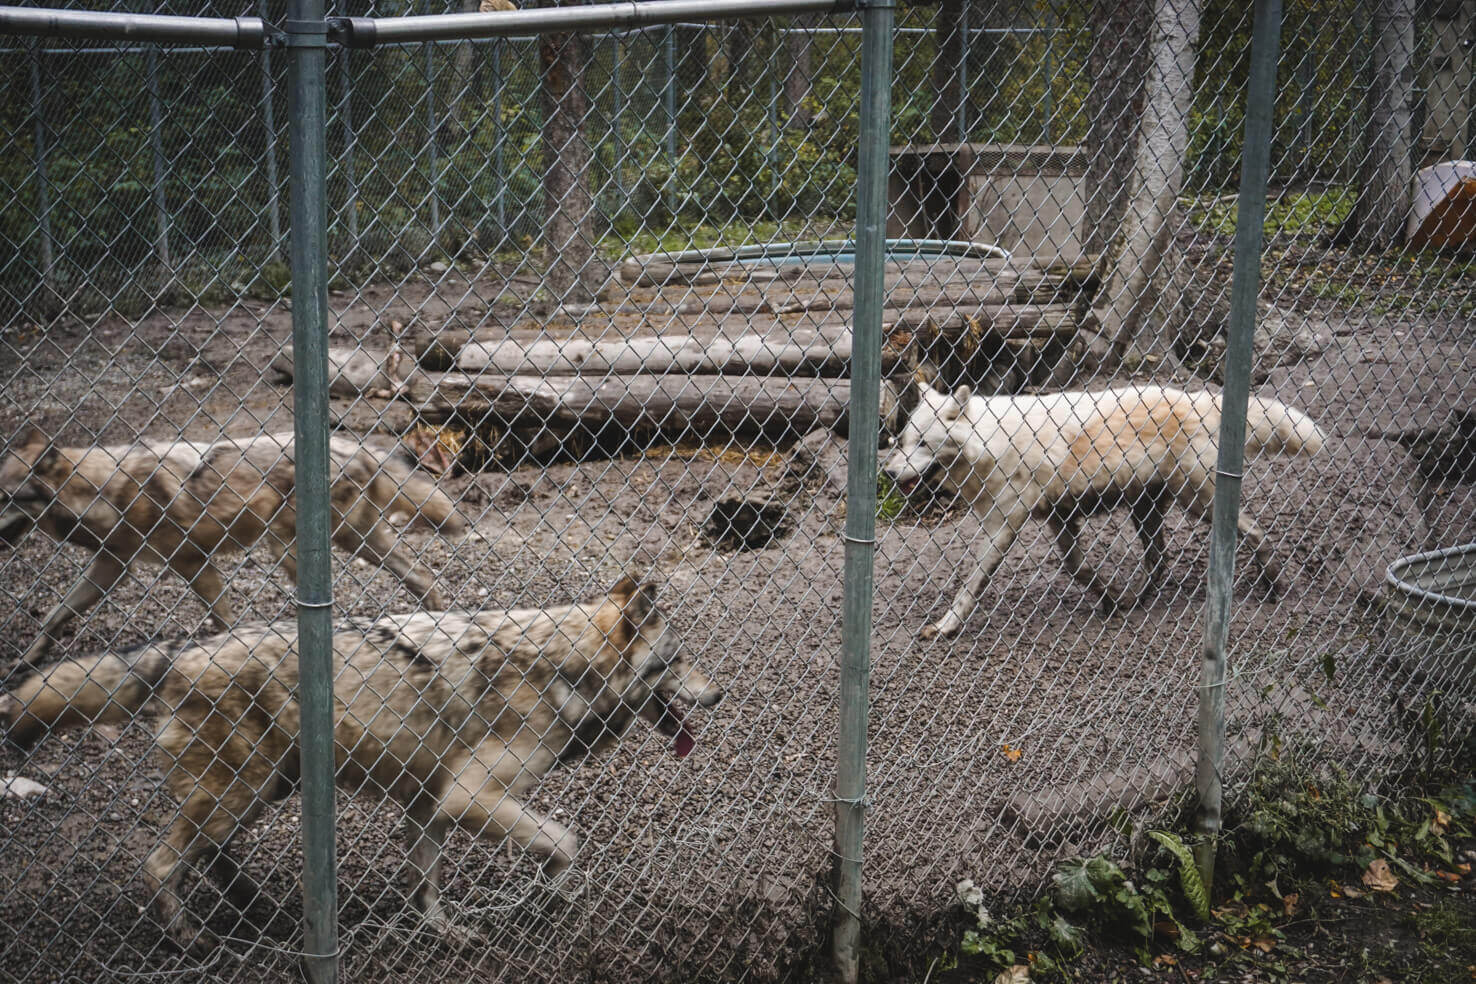 Northern Lights Wildlife Wolf Center in Golden